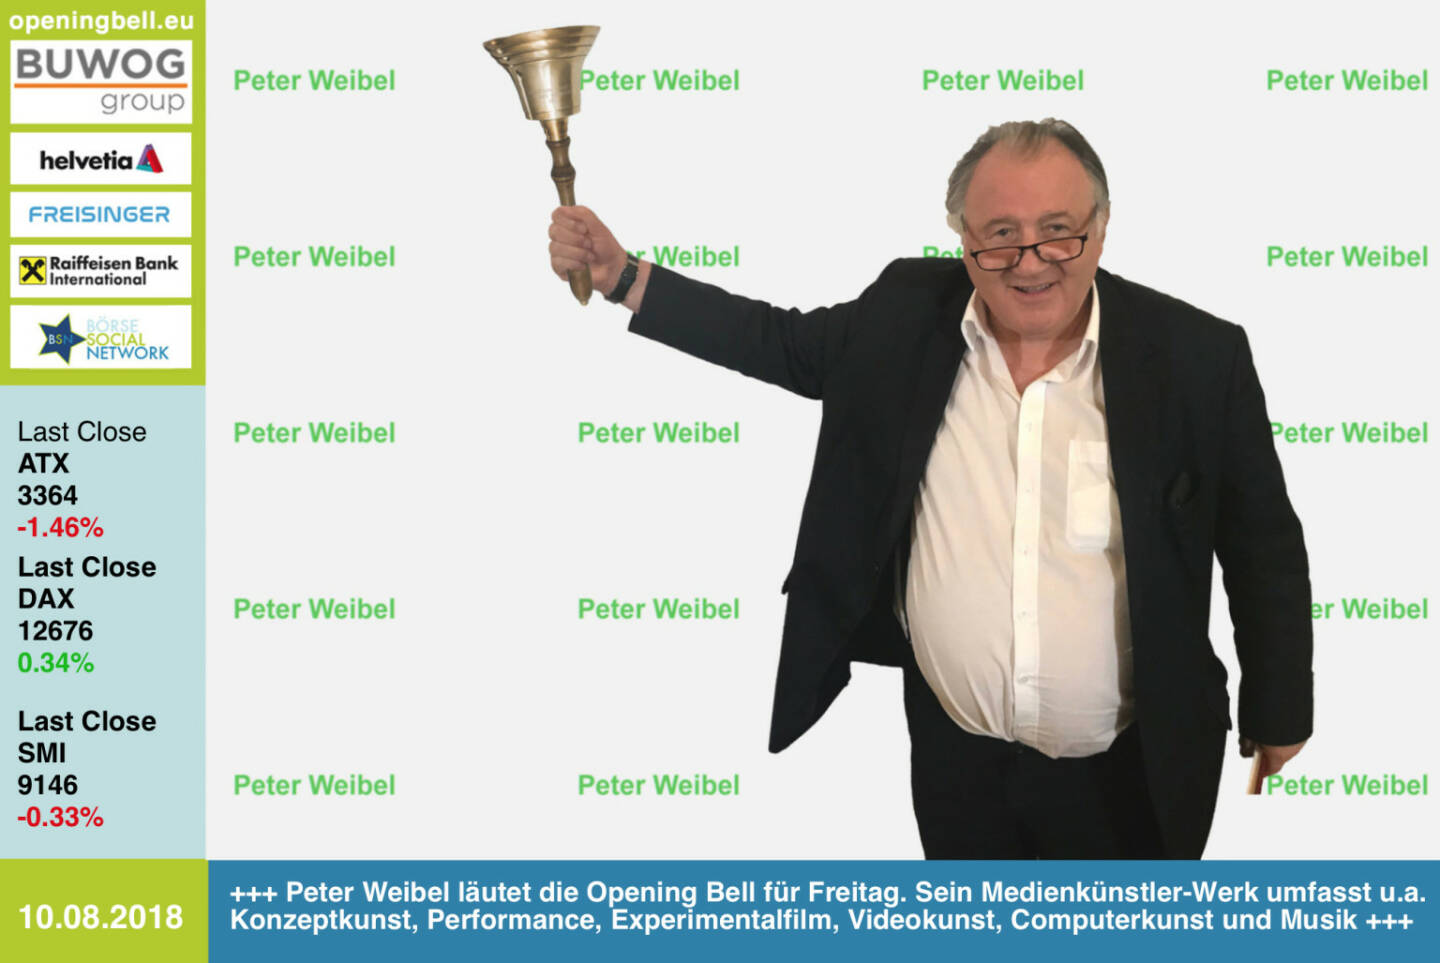 10.8.: Peter Weibel läutet die Opening Bell für Freitag. Sein Medienkünstler-Werk umfasst u.a. Konzeptkunst, Performance, Experimentalfilm, Videokunst, Computerkunst und Musik (Hotel Morphila Orchester)